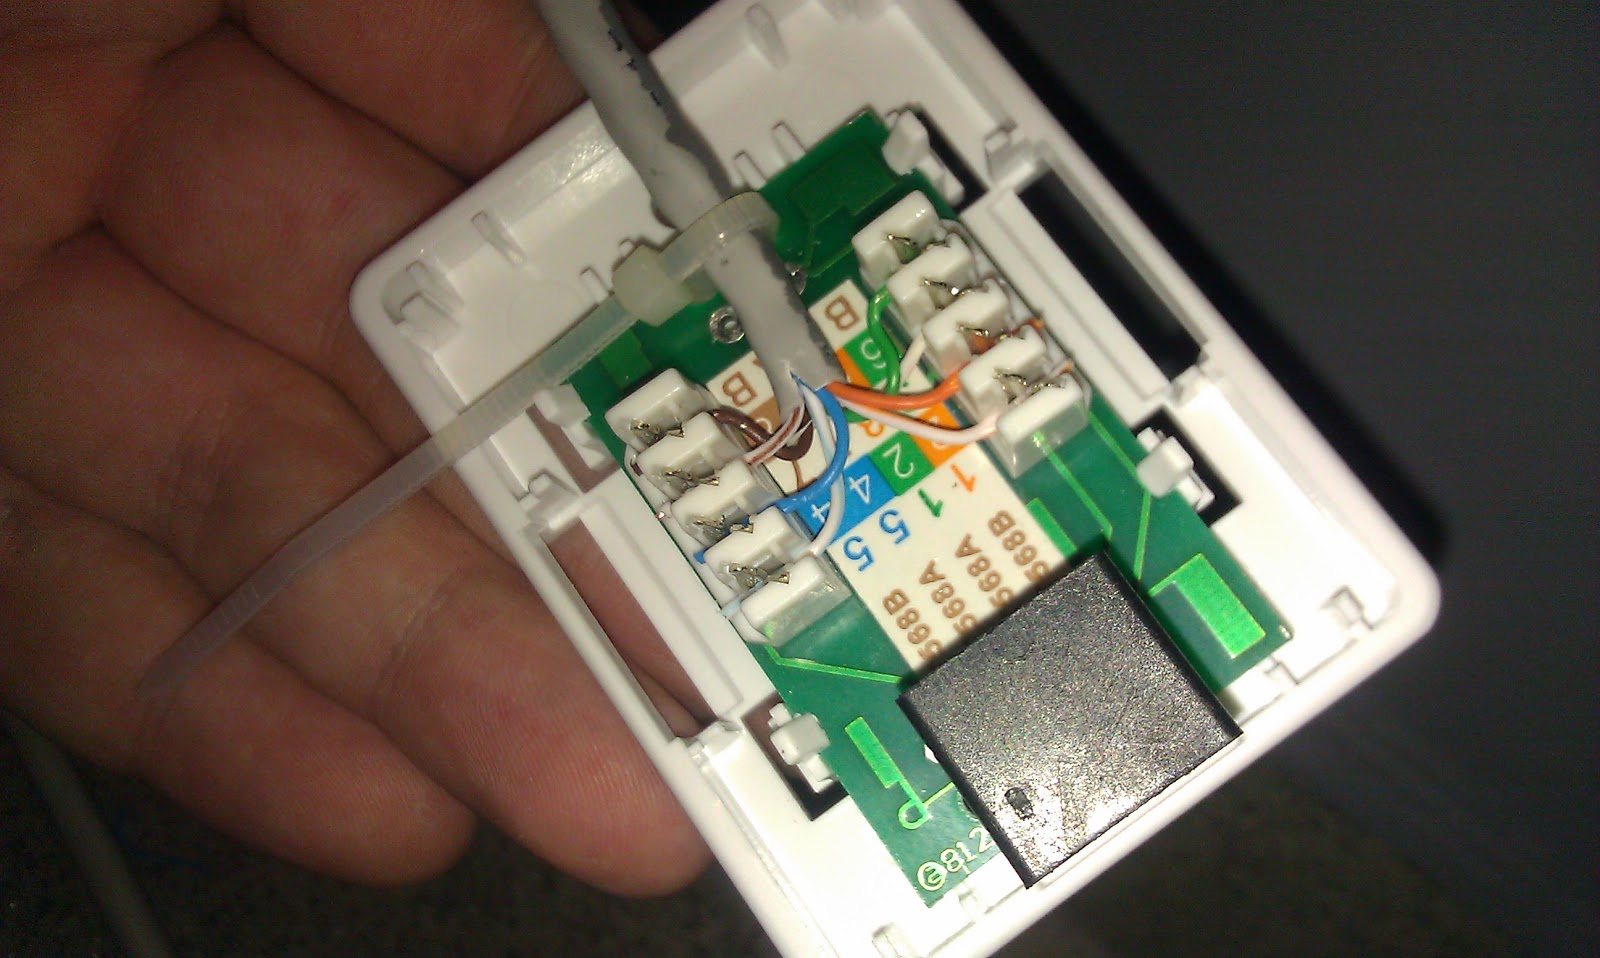 #1: Montaż kabla RJ45 w gnieździe sieciowym cat5e (socket wiring)